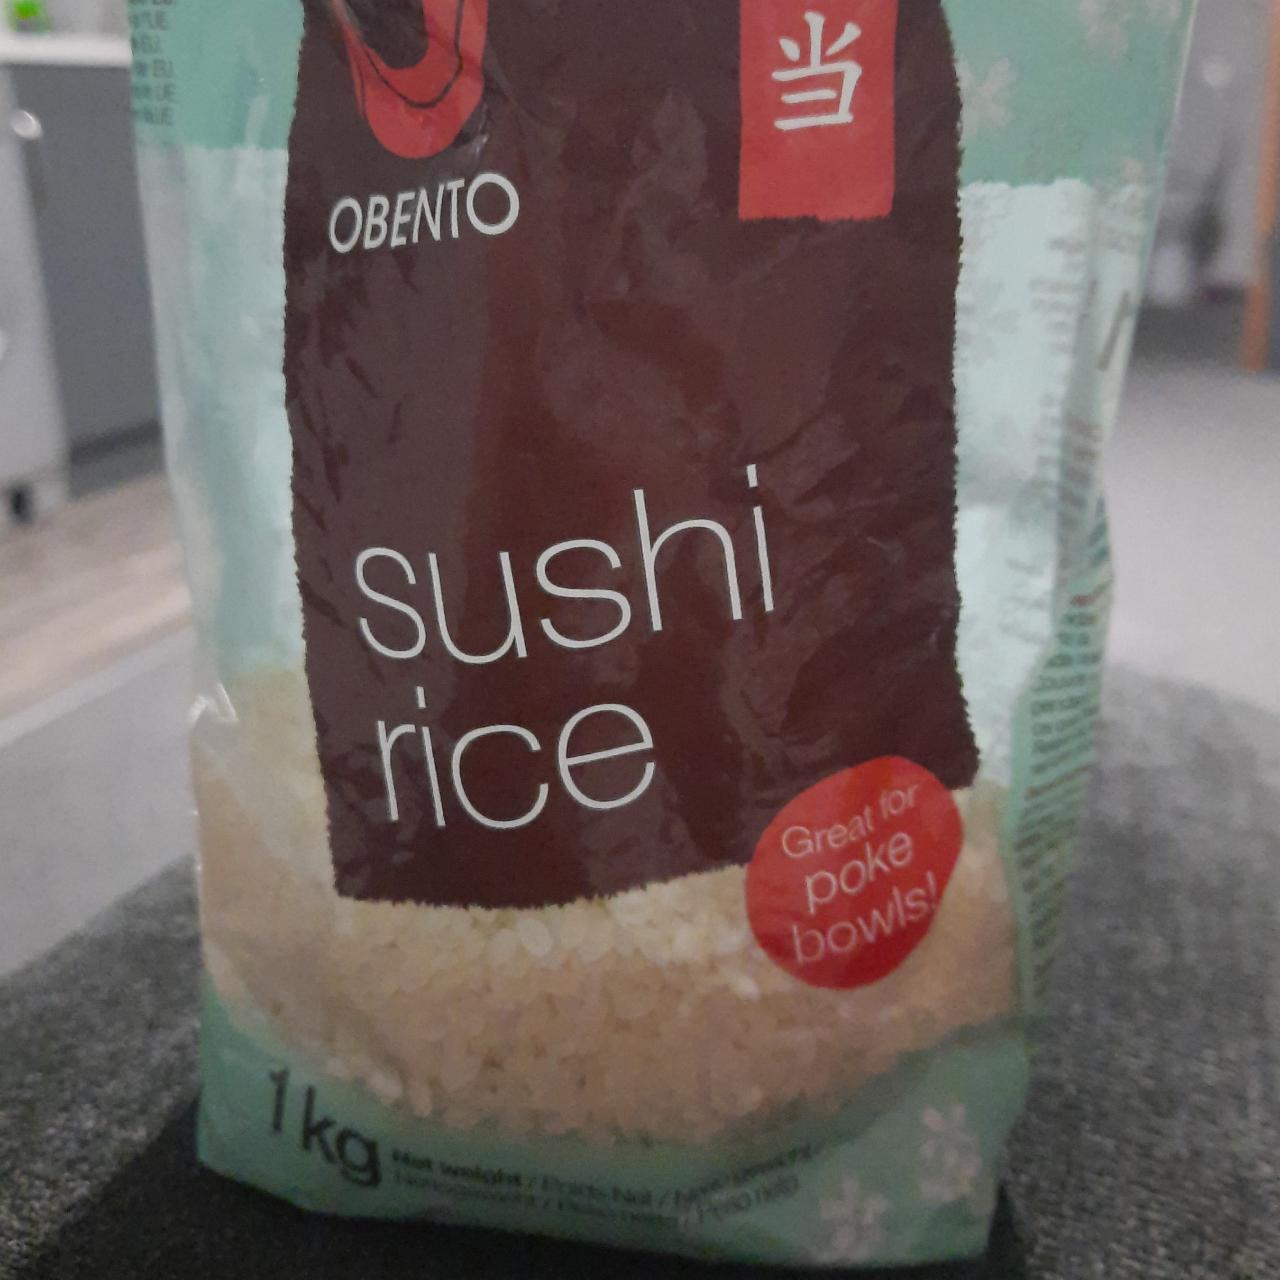 Fotografie - Sushi Rice Obento